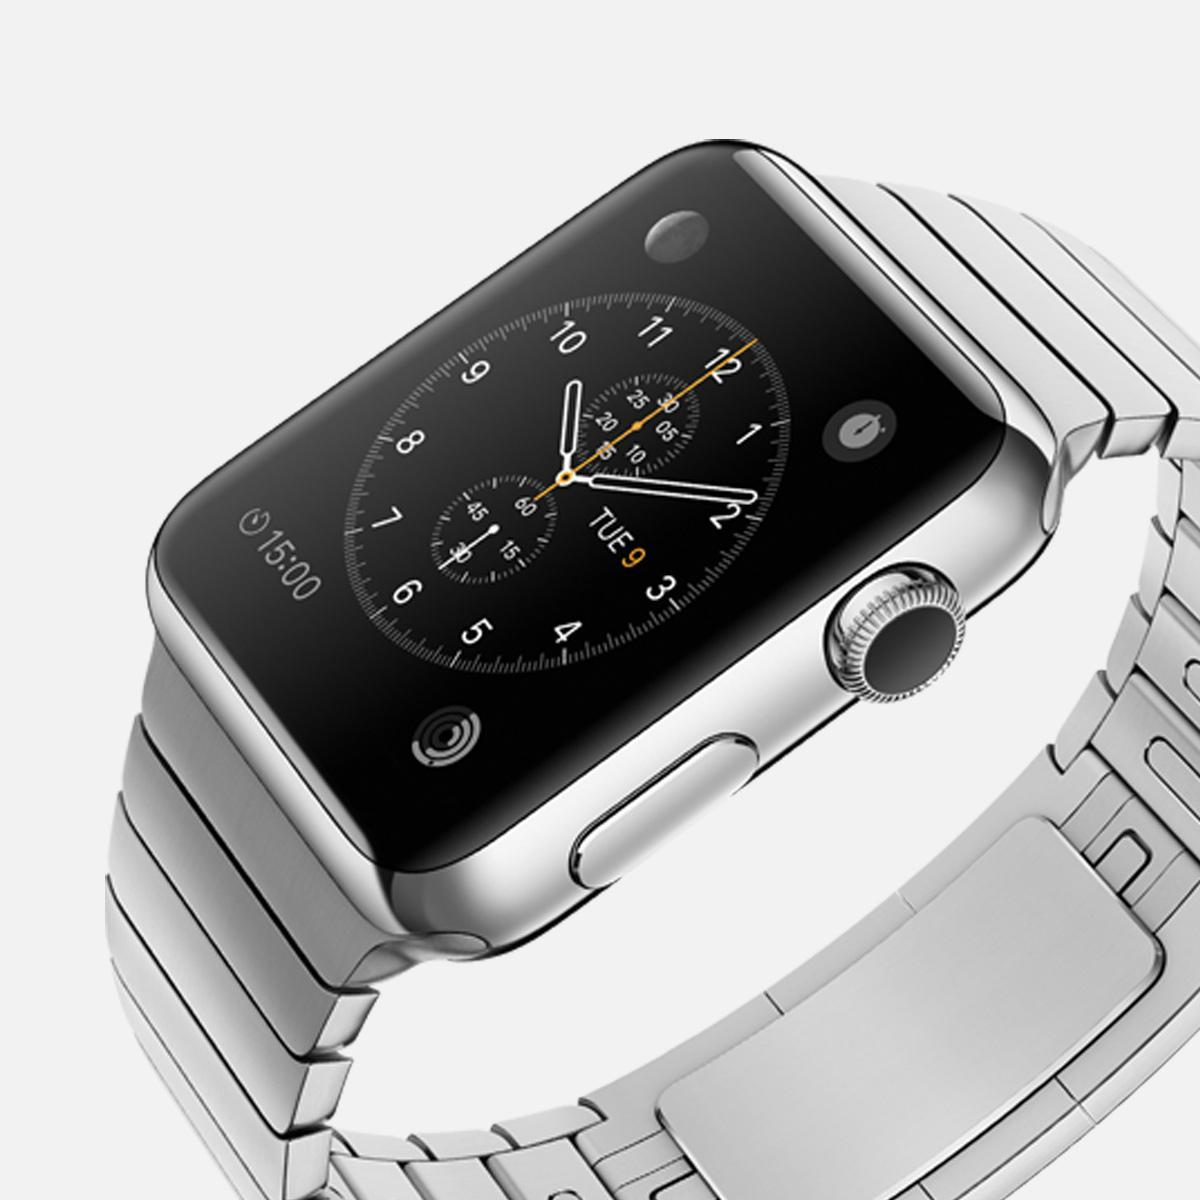 De nieuwe Apple Watch komt er binnenkort aan! Volg AppleWatchNL en blijf op de hoogte van de laatste ontwikkelingen omtrent de Apple Watch.